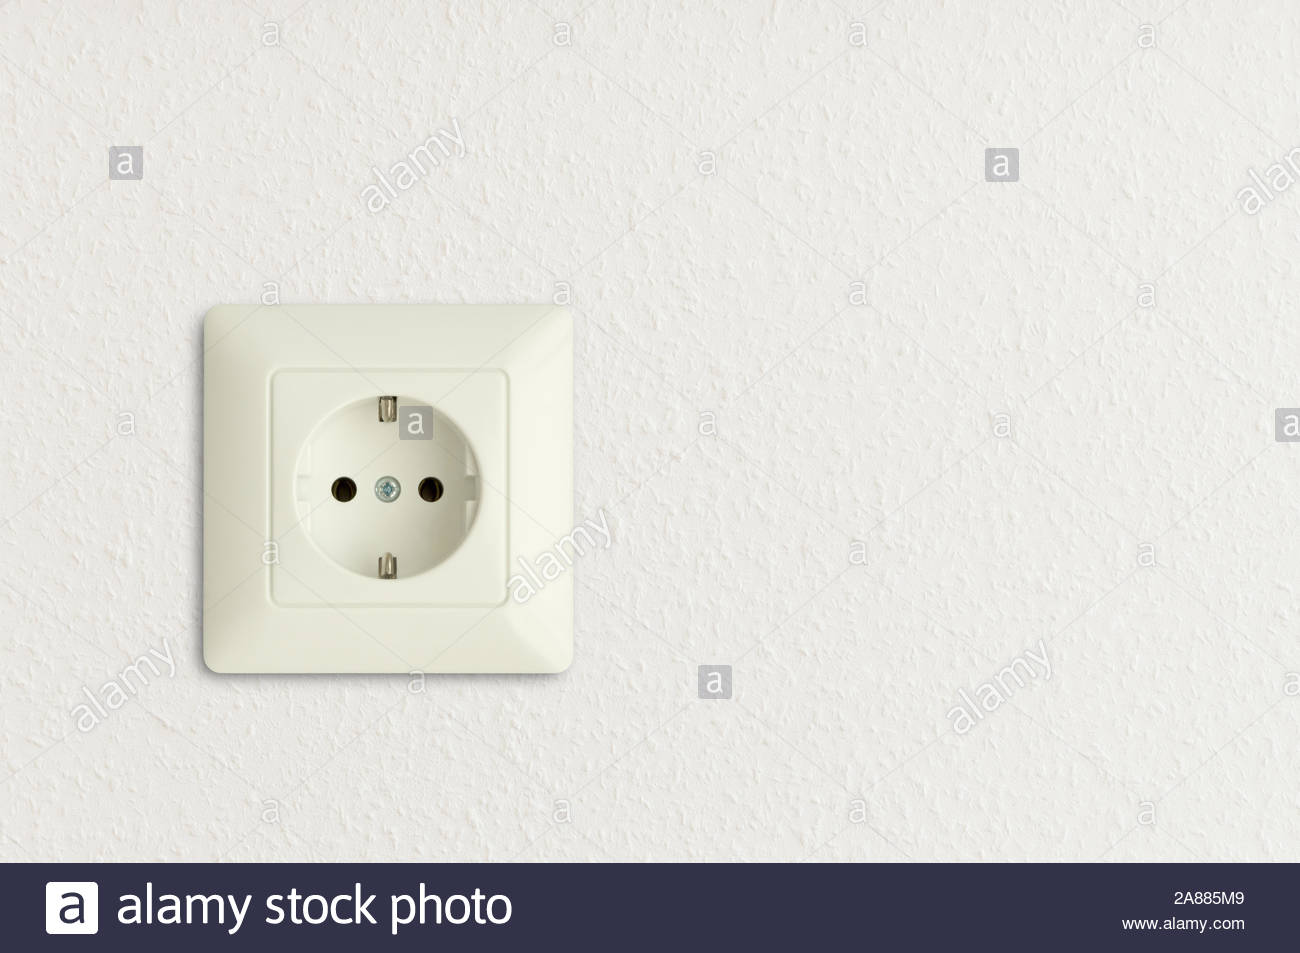 white european electrical outlet on white wall Stock Photo ...